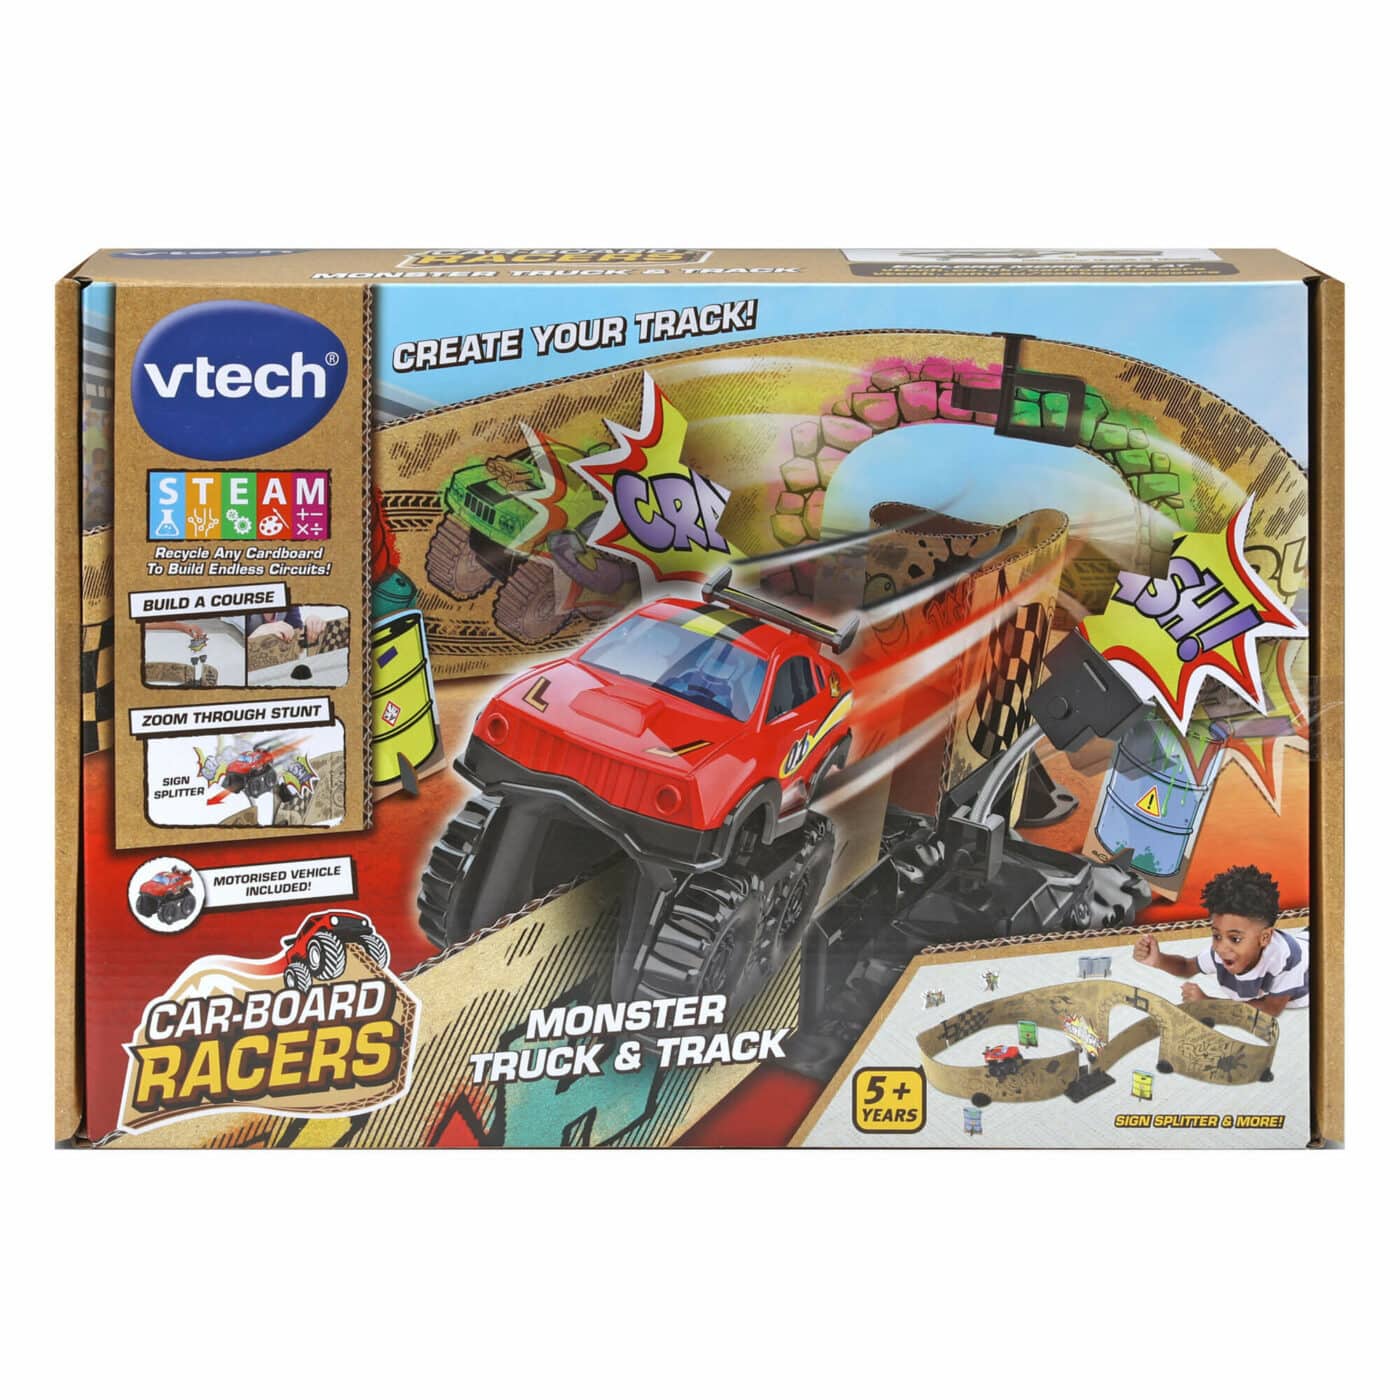 Vtech Car-Board Racers - Monster Truck & Track